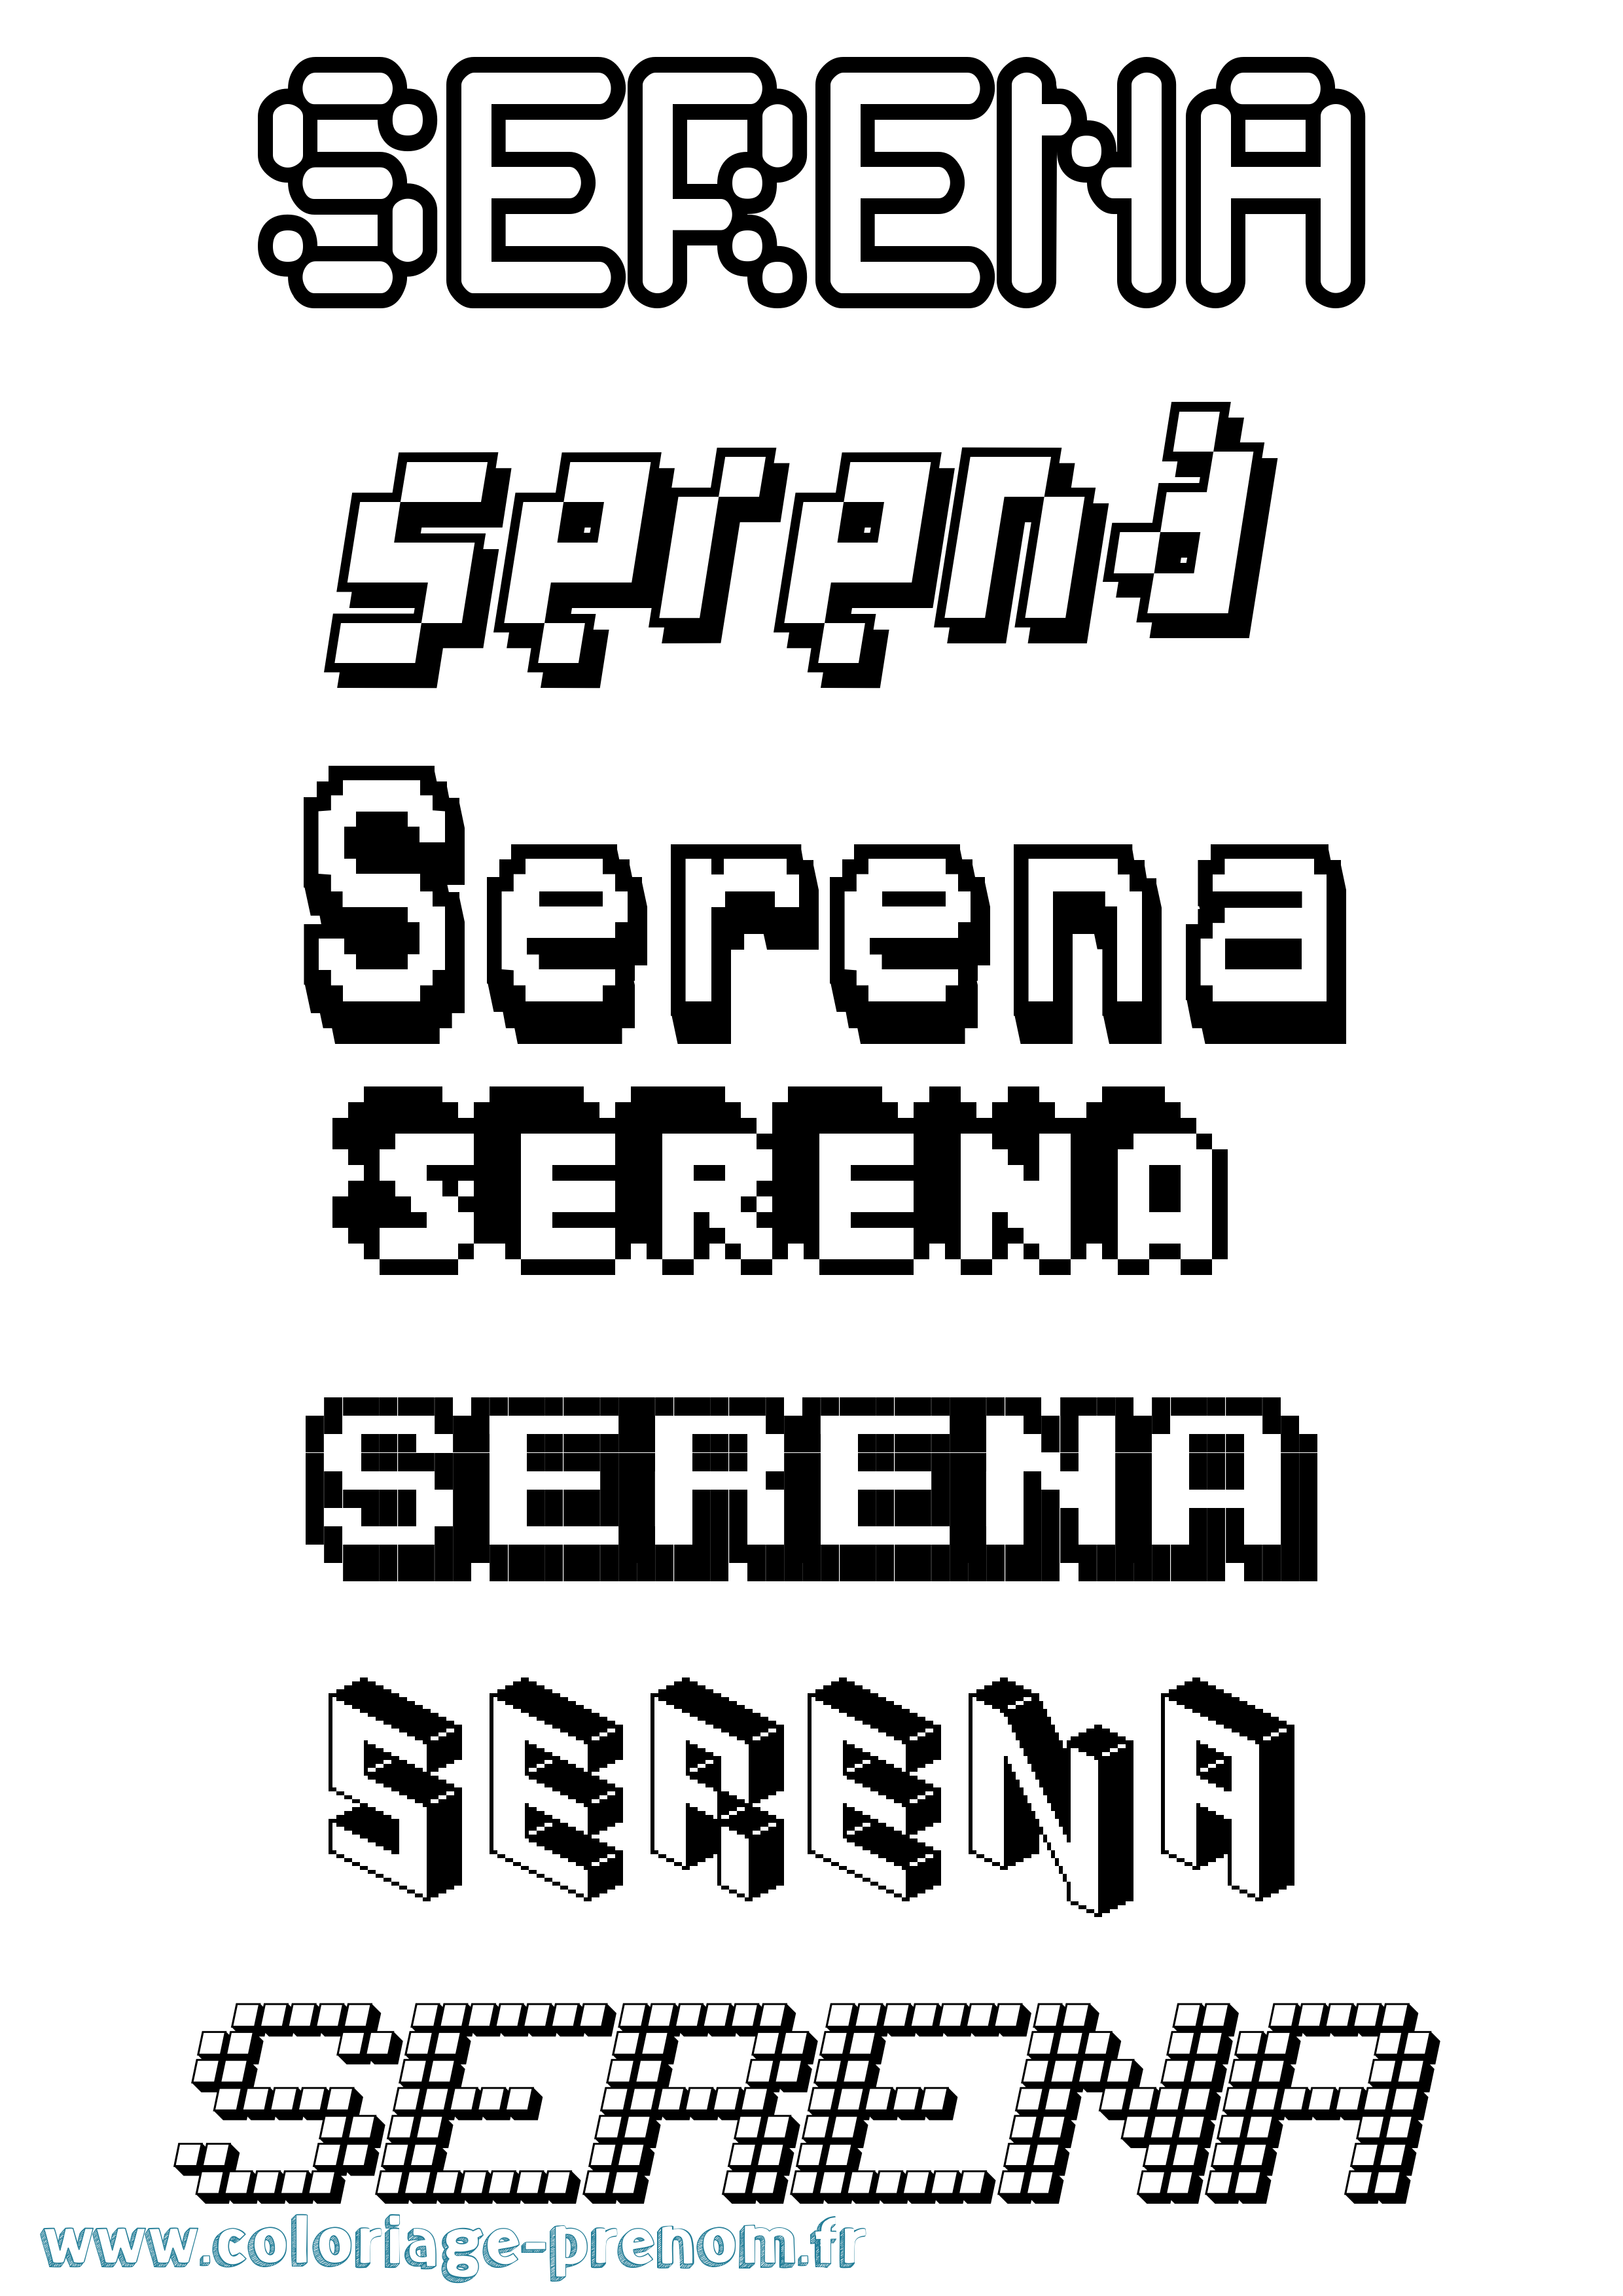 Coloriage prénom Serena Pixel